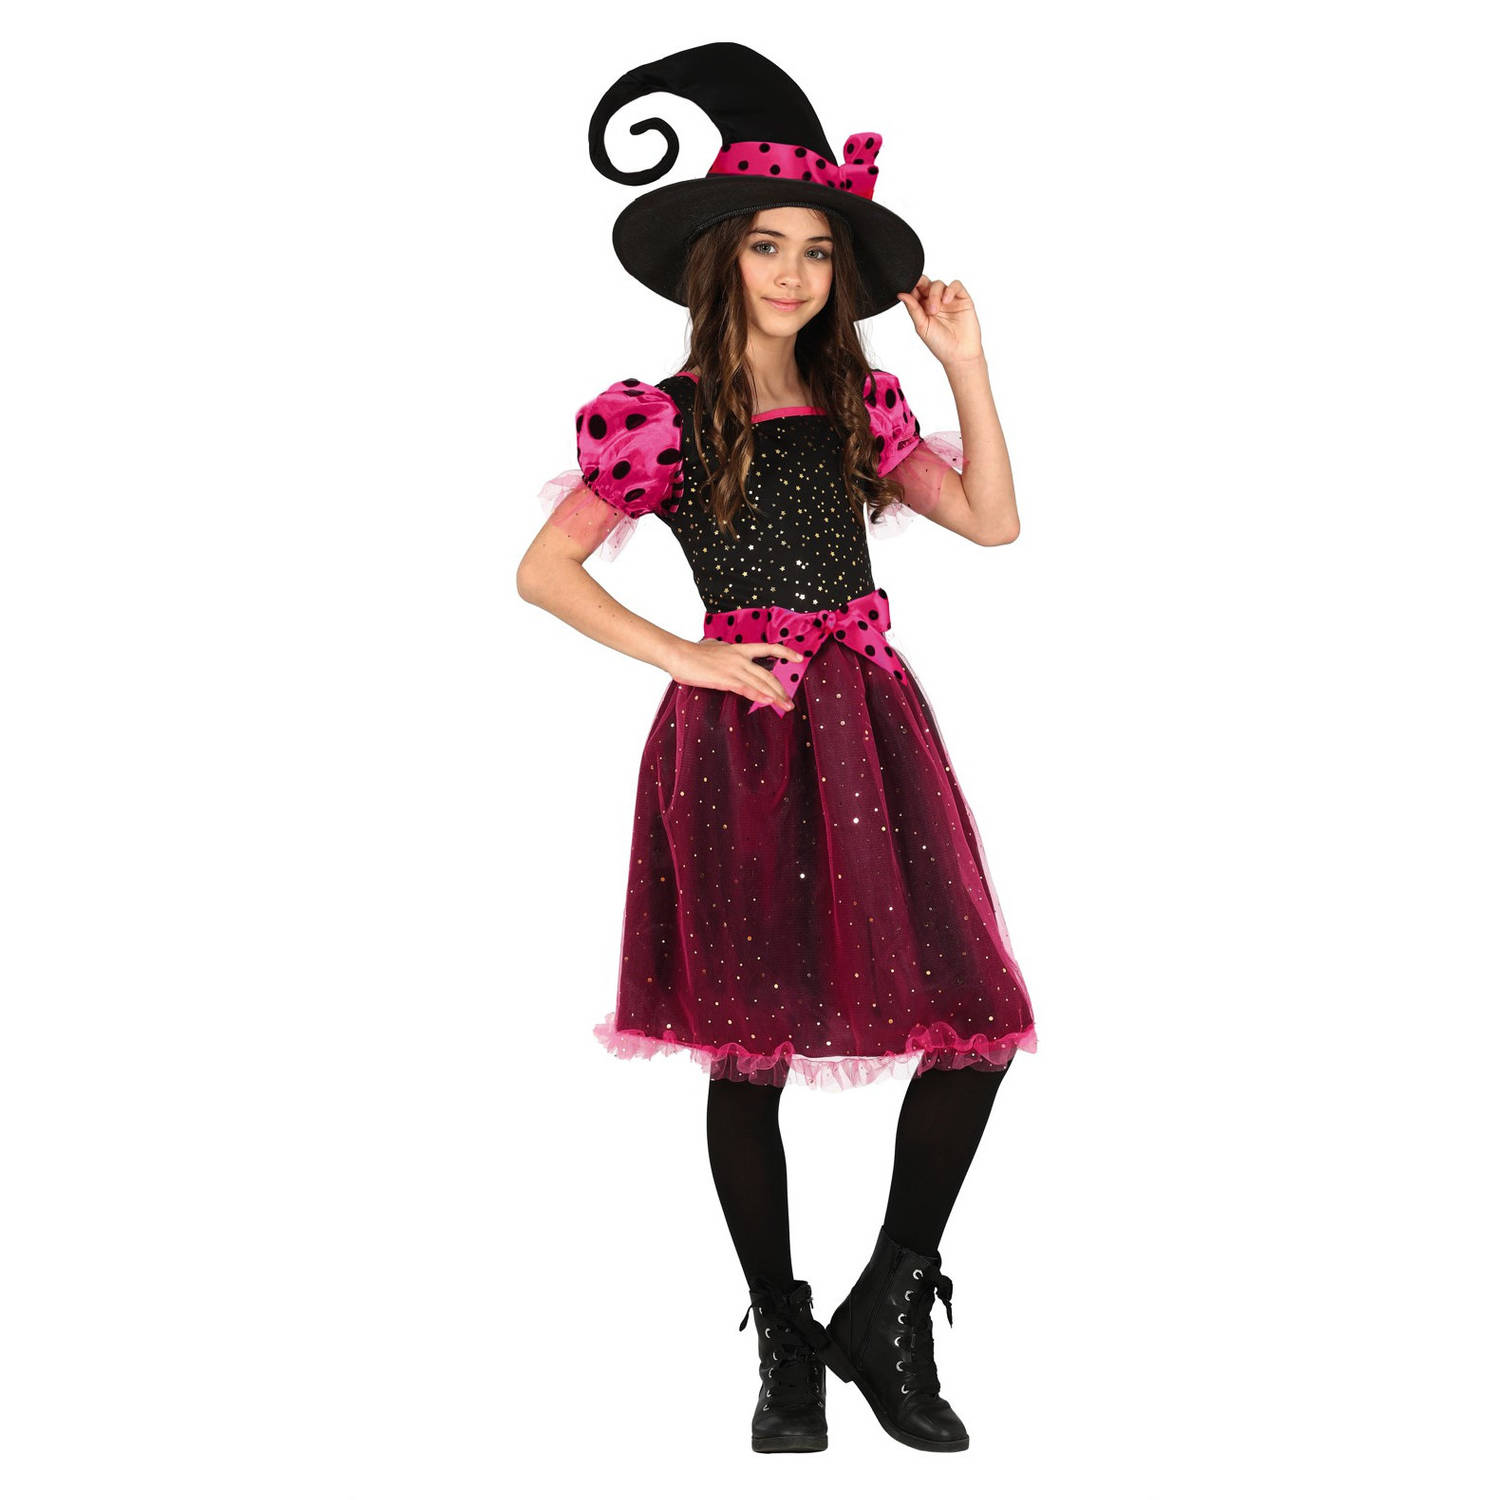 Heksen verkleed kostuum zwart/roze voor meisjes - Halloween / horror thema outfit - Carnaval heks jurk met hoed 140/152